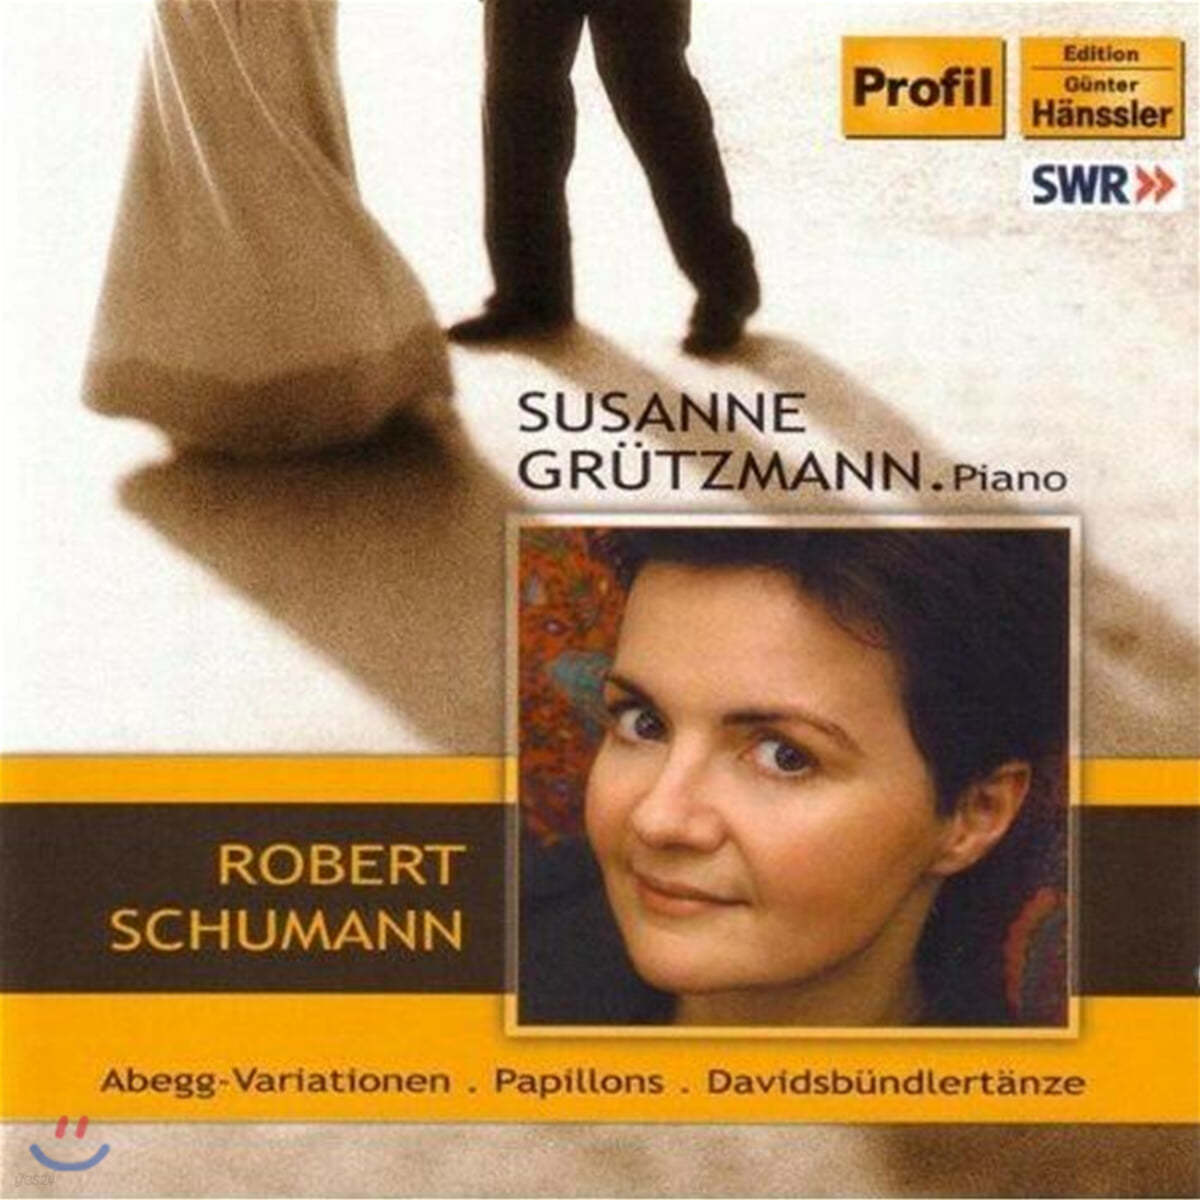 Susanne Grutzmann 슈만: 피아노 작품 모음집 (Schumann : Abegg Variations Op.1, Papilons Op.2, Davidsbundlertanze Op.6) 